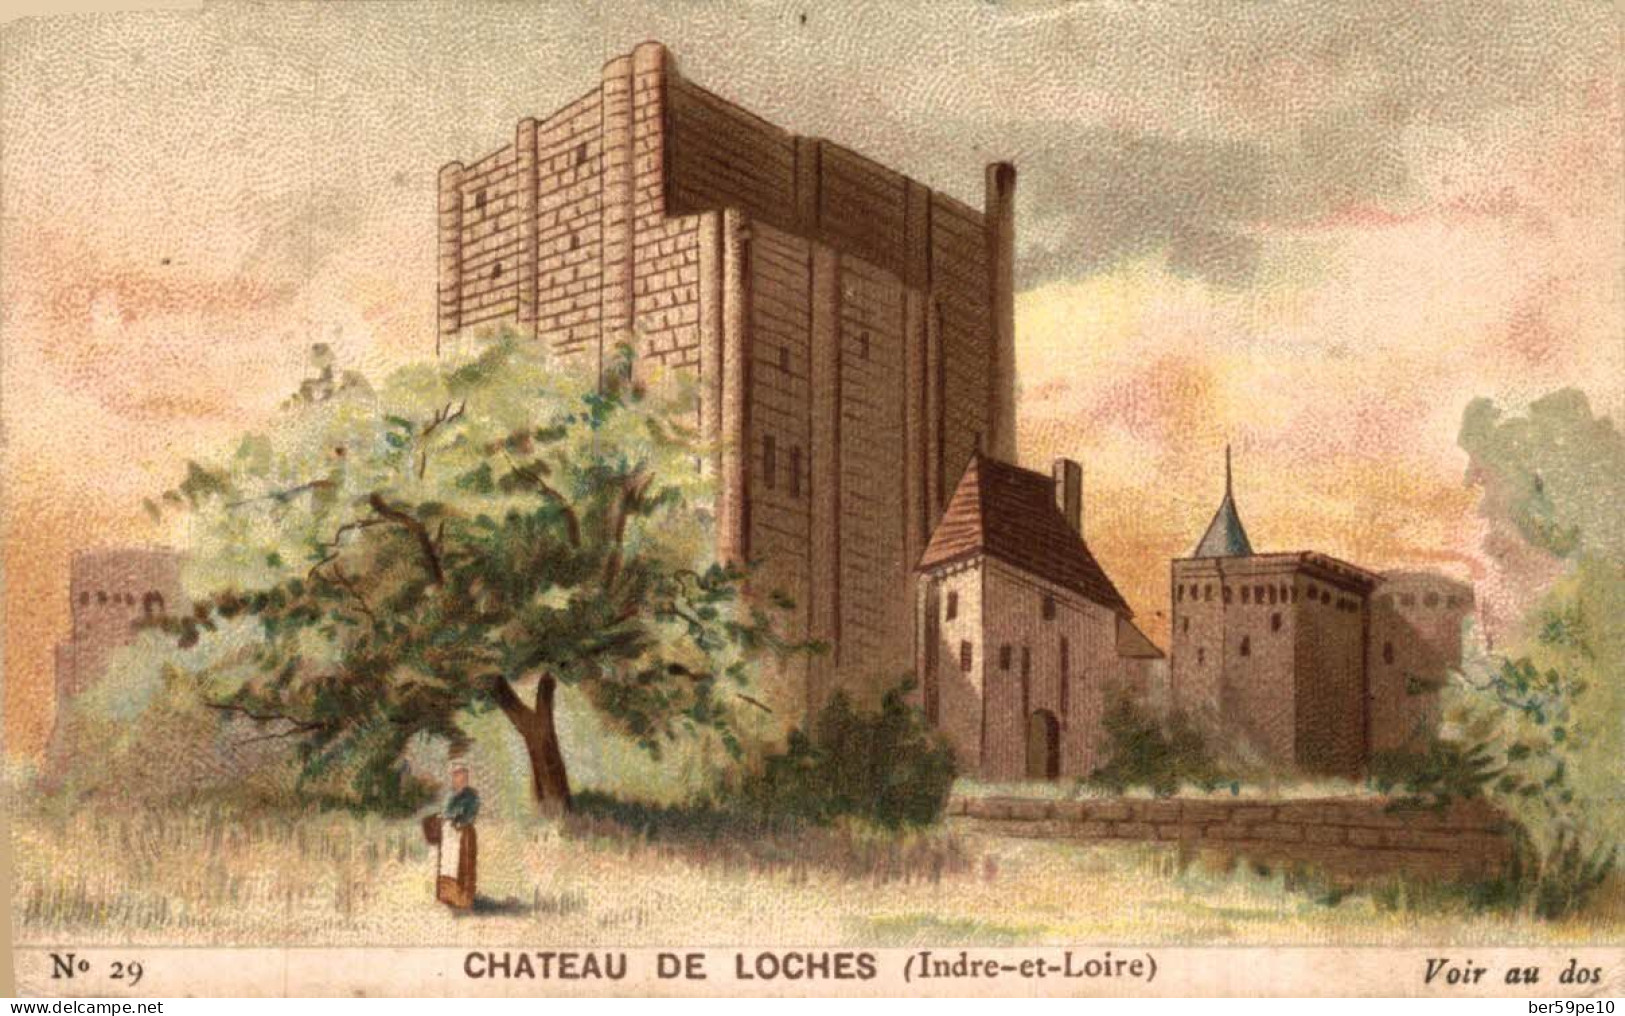 CHROMO CHOCOLAT GUERIN-BOUTRON CHATEAU DE LOCHE (INDRE ET LOIRE) - Guerin Boutron